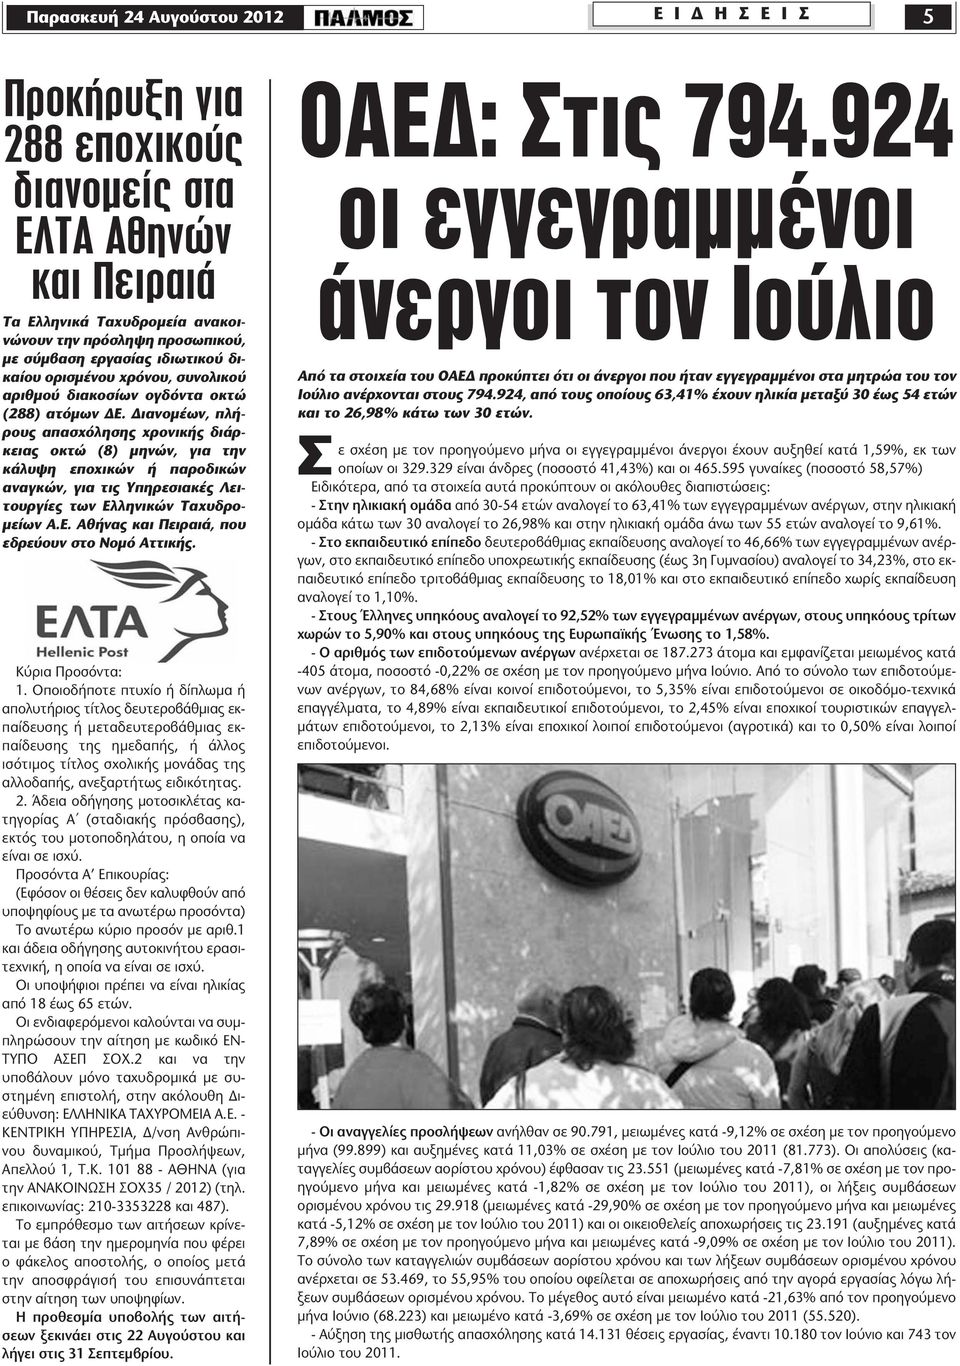 Διανομέων, πλήρους απασχόλησης χρονικής διάρκειας οκτώ (8) μηνών, για την κάλυψη εποχικών ή παροδικών αναγκών, για τις Υπηρεσιακές Λειτουργίες των Ελληνικών Ταχυδρομείων Α.Ε. Αθήνας και Πειραιά, που εδρεύουν στο Νομό Αττικής.